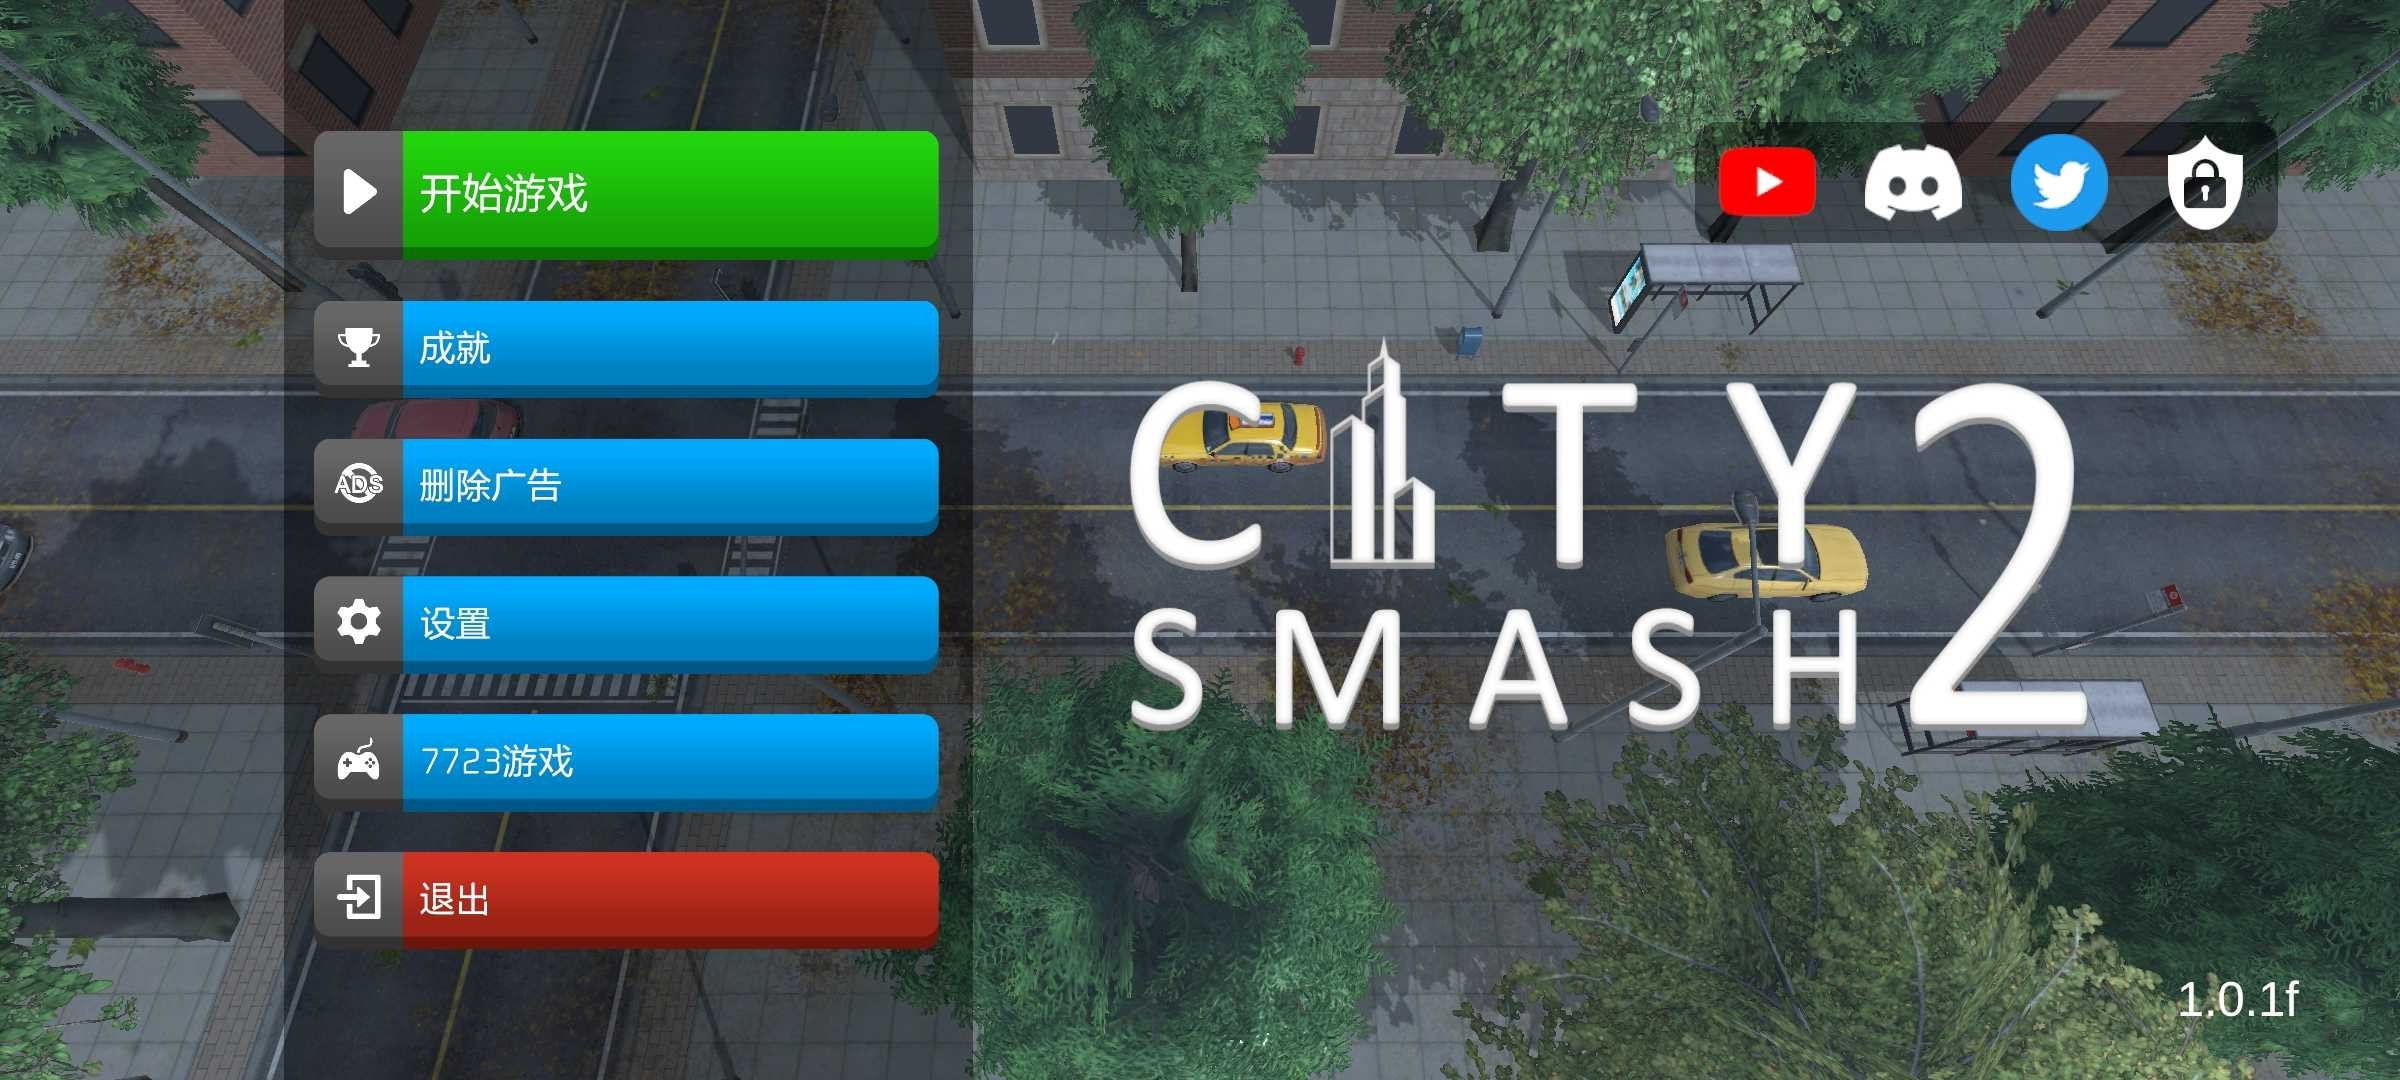 城市粉碎模拟器2截图1